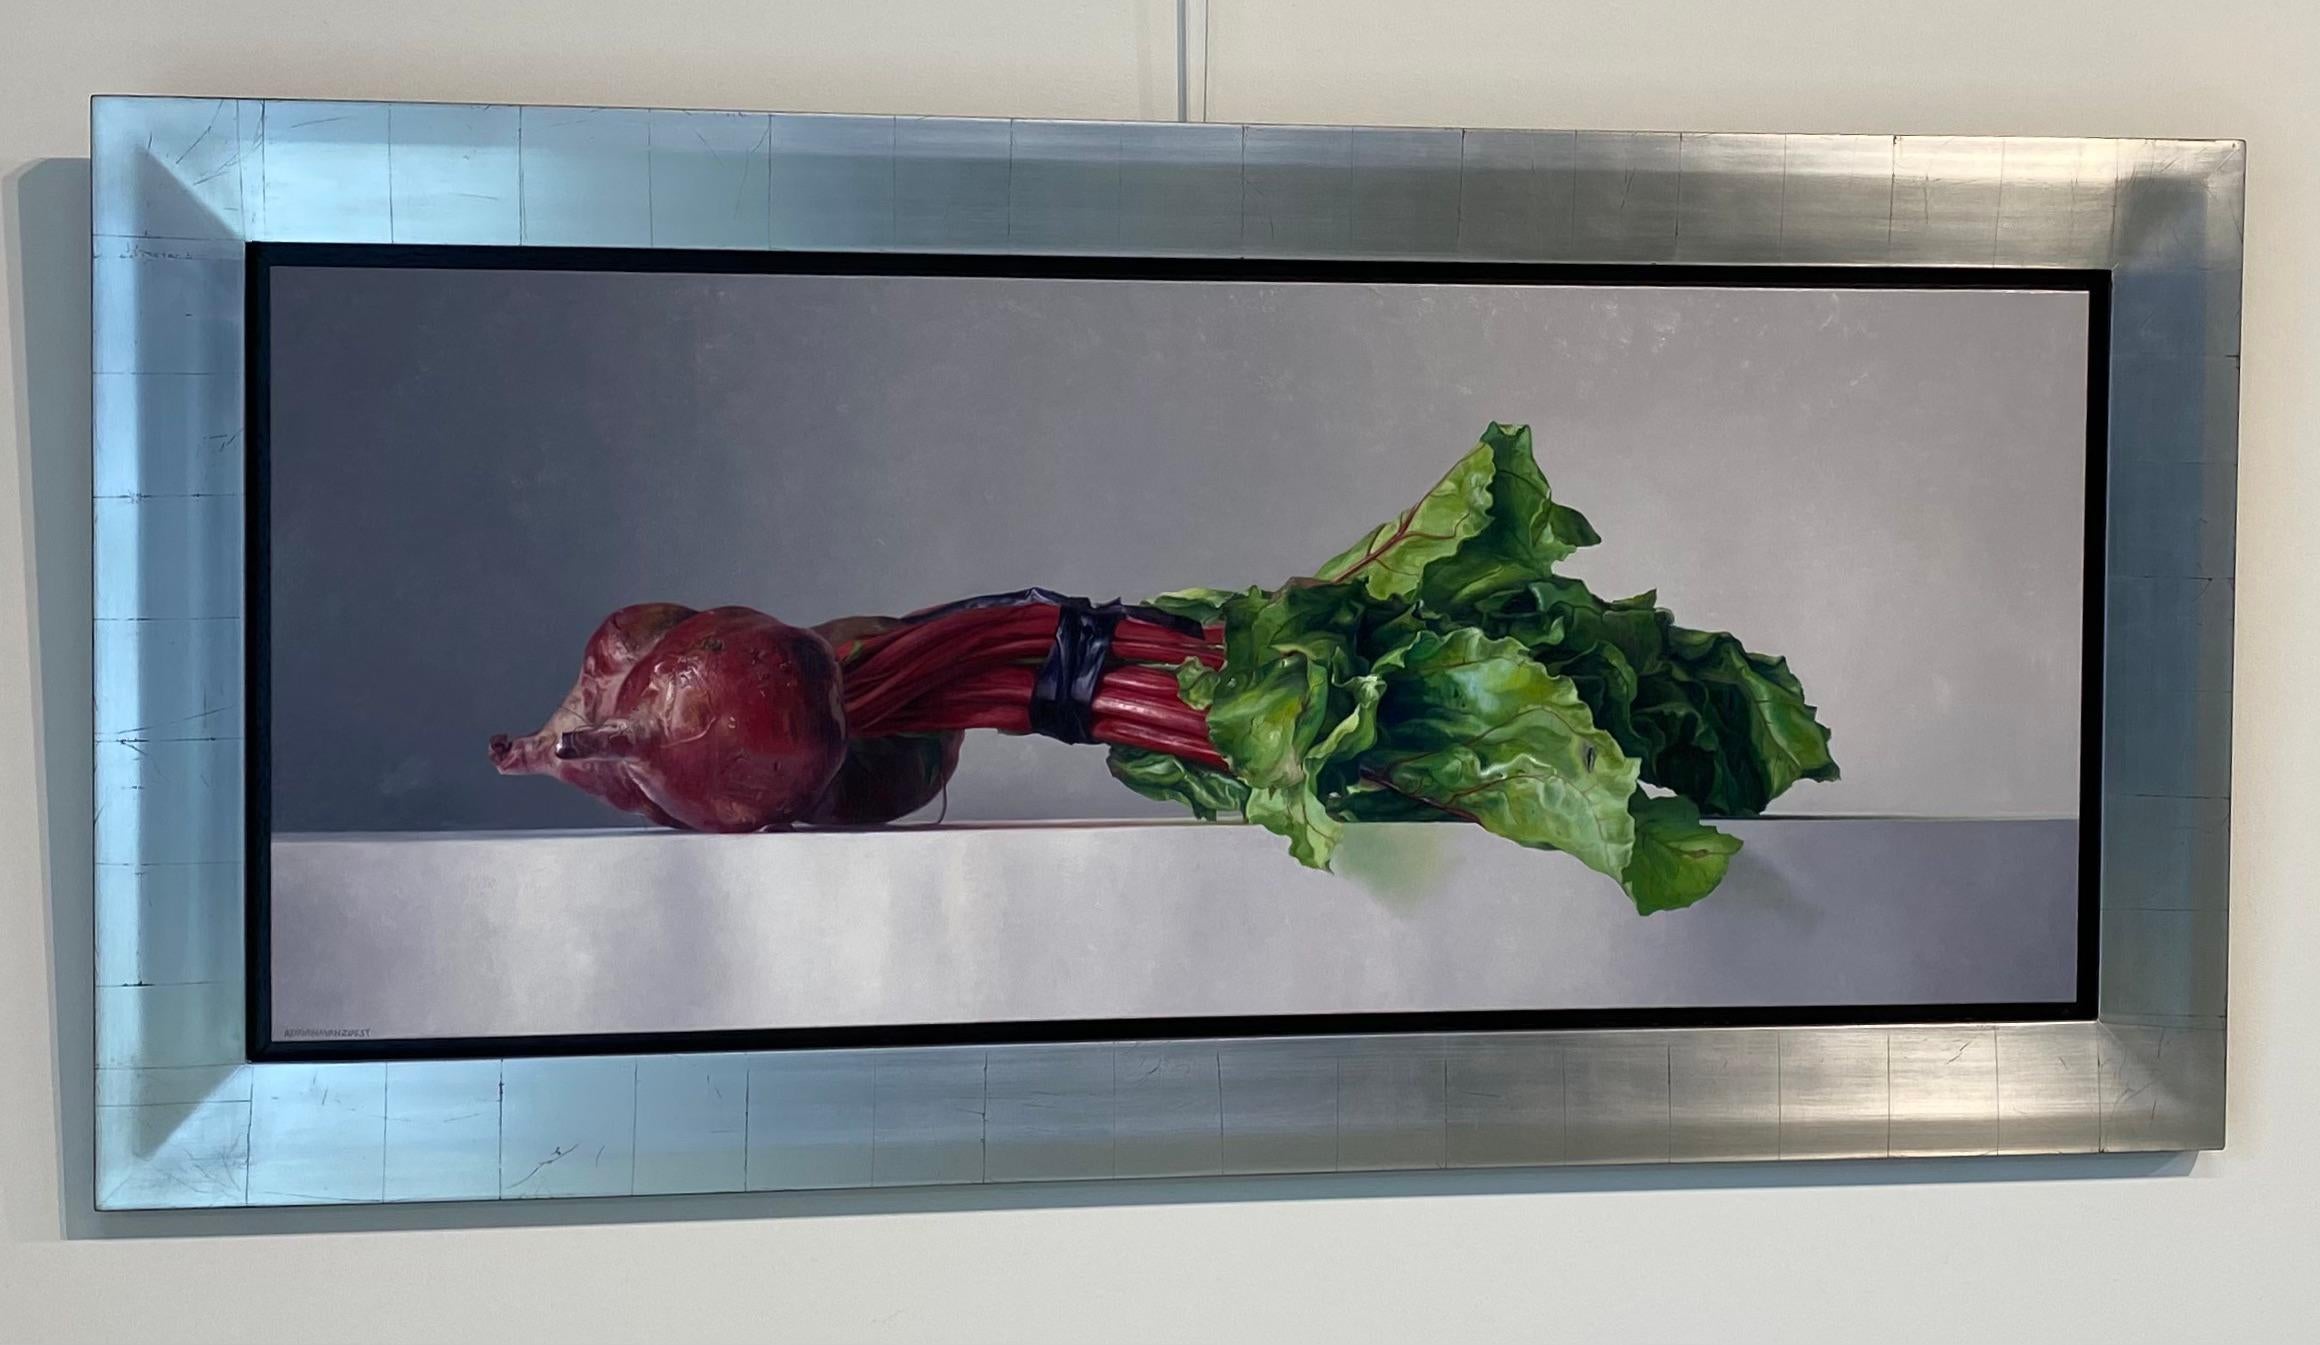 Beet- Zeitgenössisches niederländisches Stillleben mit Gemüse aus dem 21. Jahrhundert – Painting von Adriana van Zoest